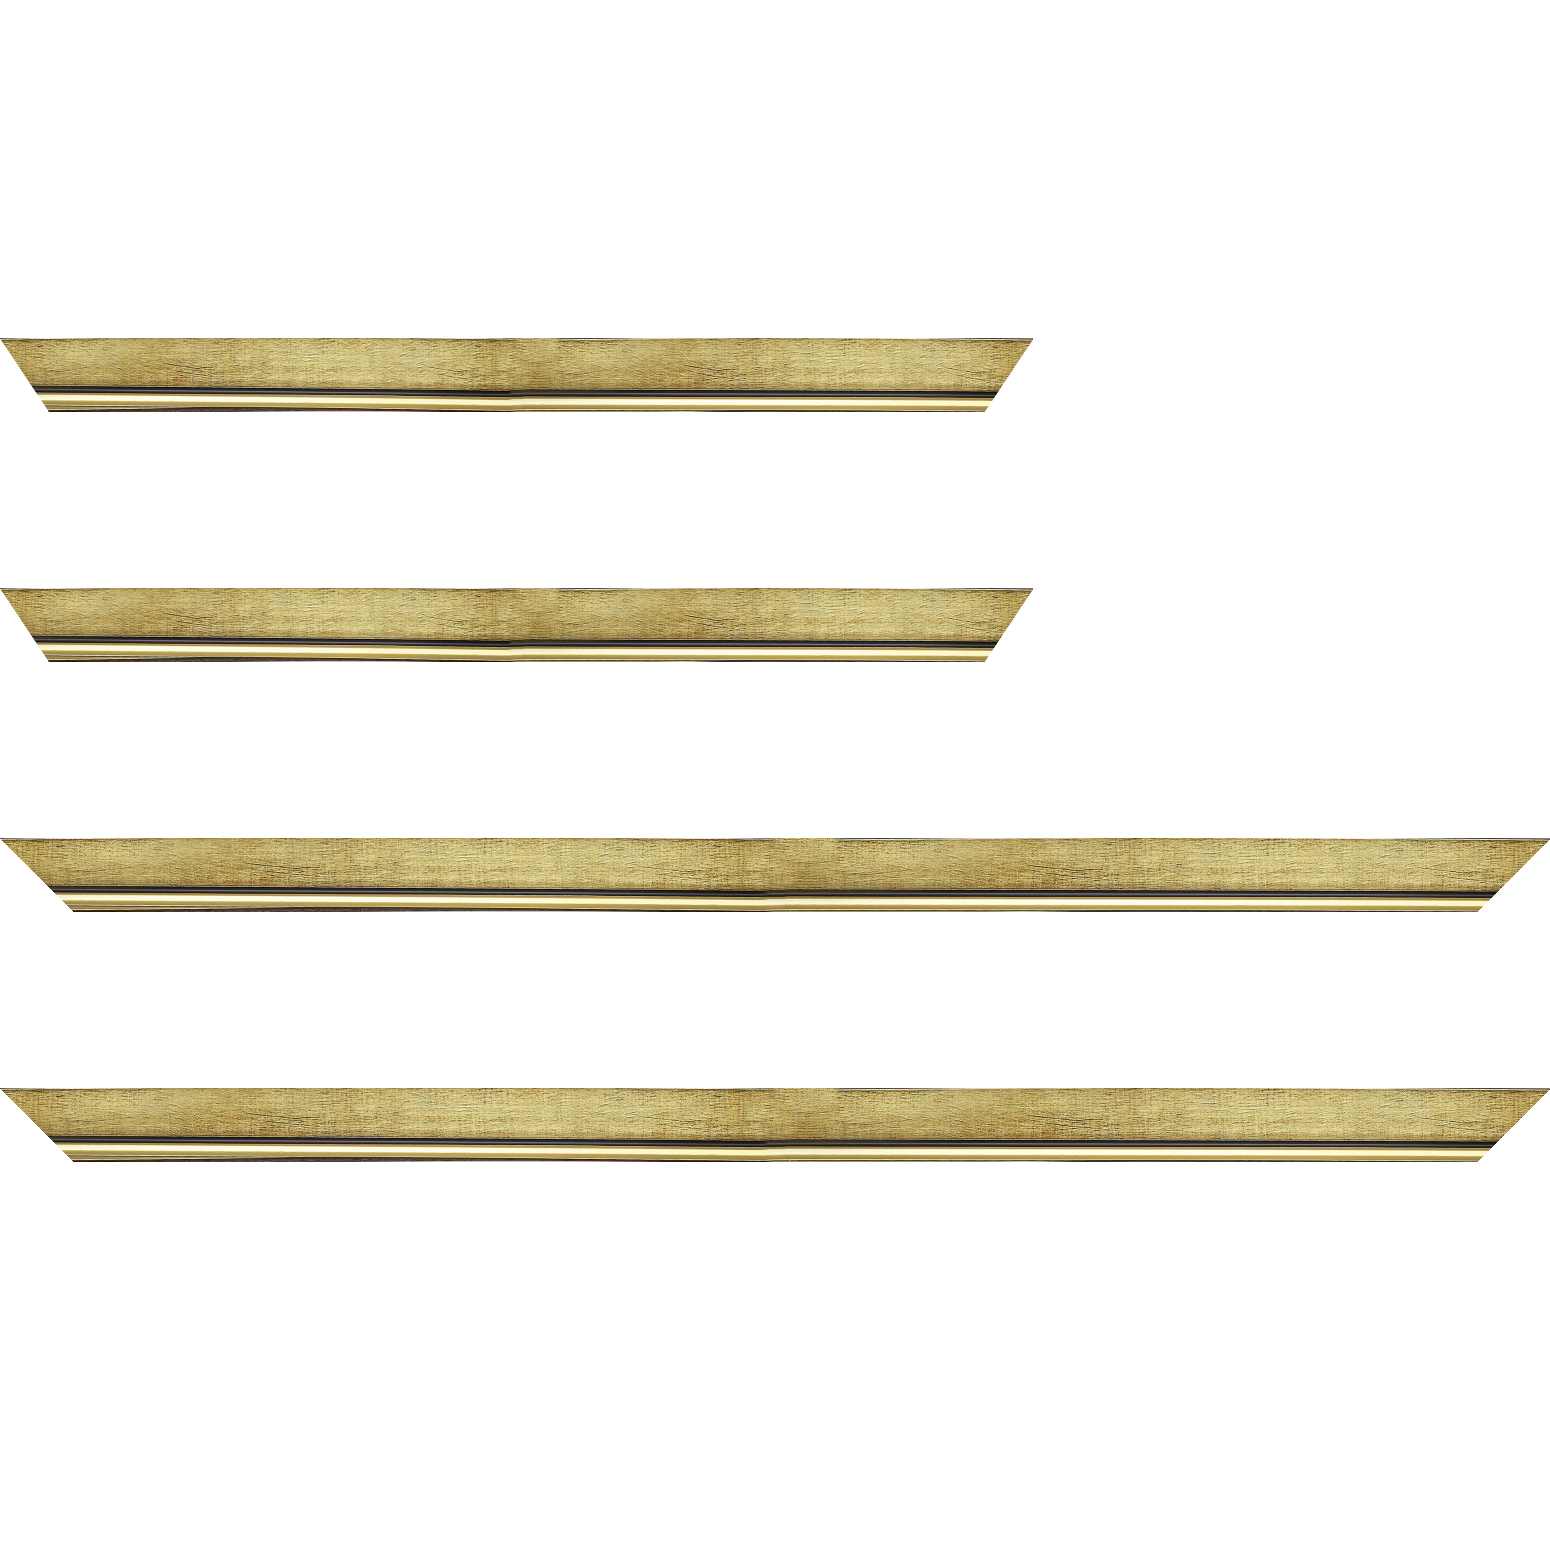 Baguette bois profil plat largeur 2.5cm couleur or filet or surligné noir - 24x30